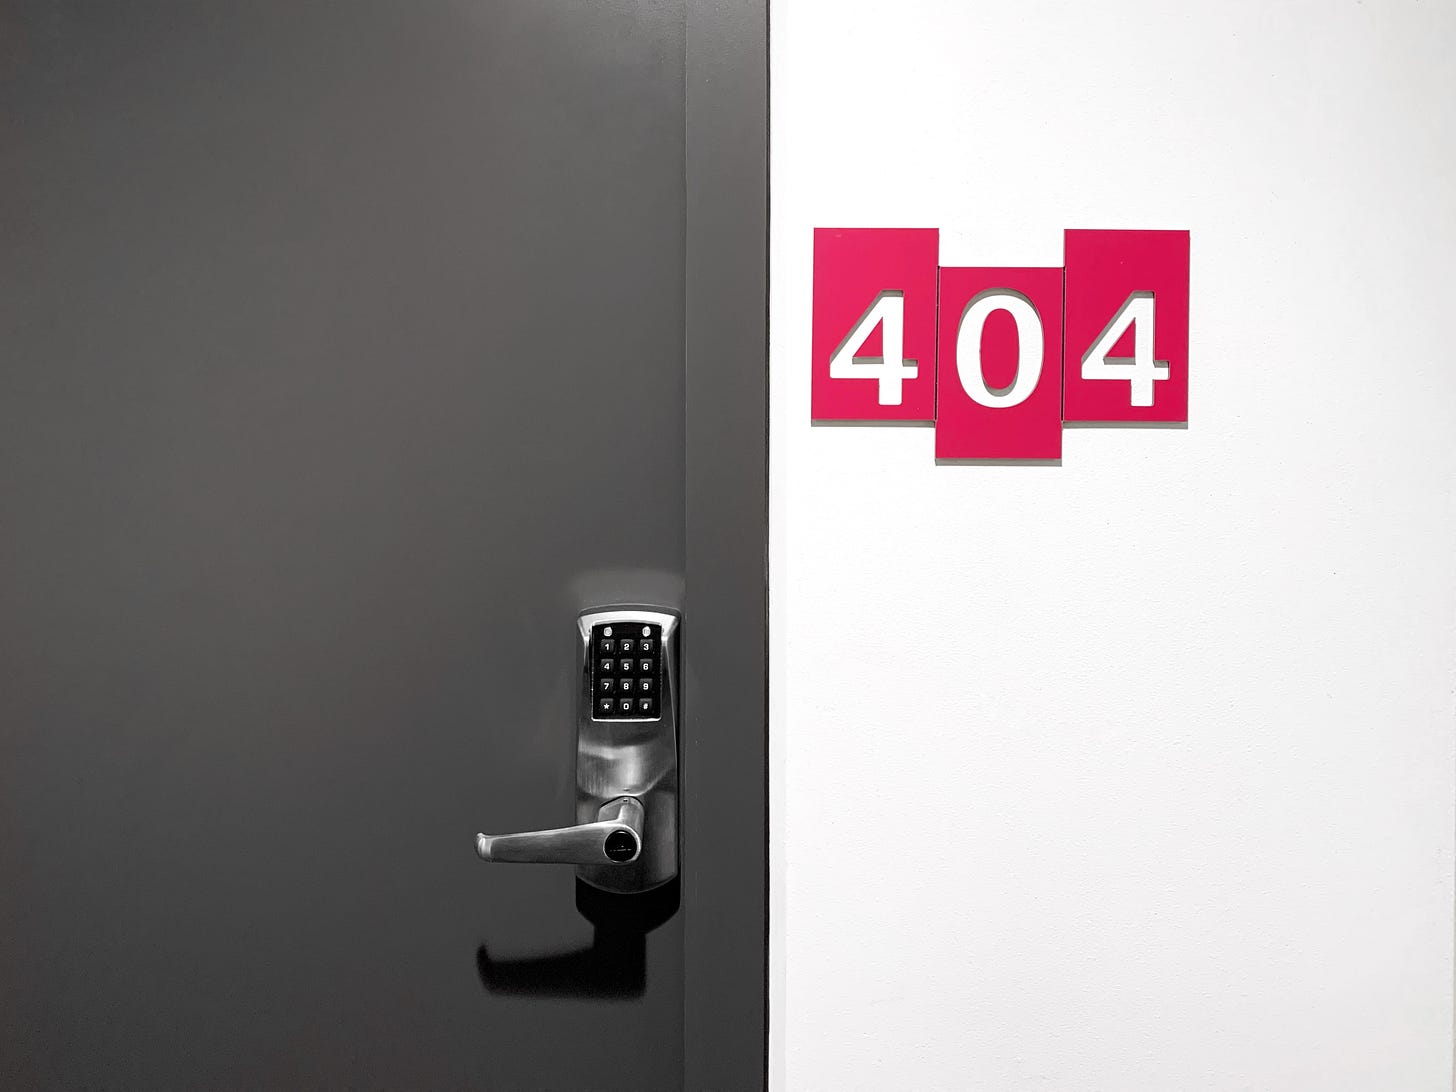 uma porta cinza, com a maçaneta com um teclado numero. Ao lado, numa parede branca, escrito com fundo vermelho e letras brancas está o número do quarto: 404.